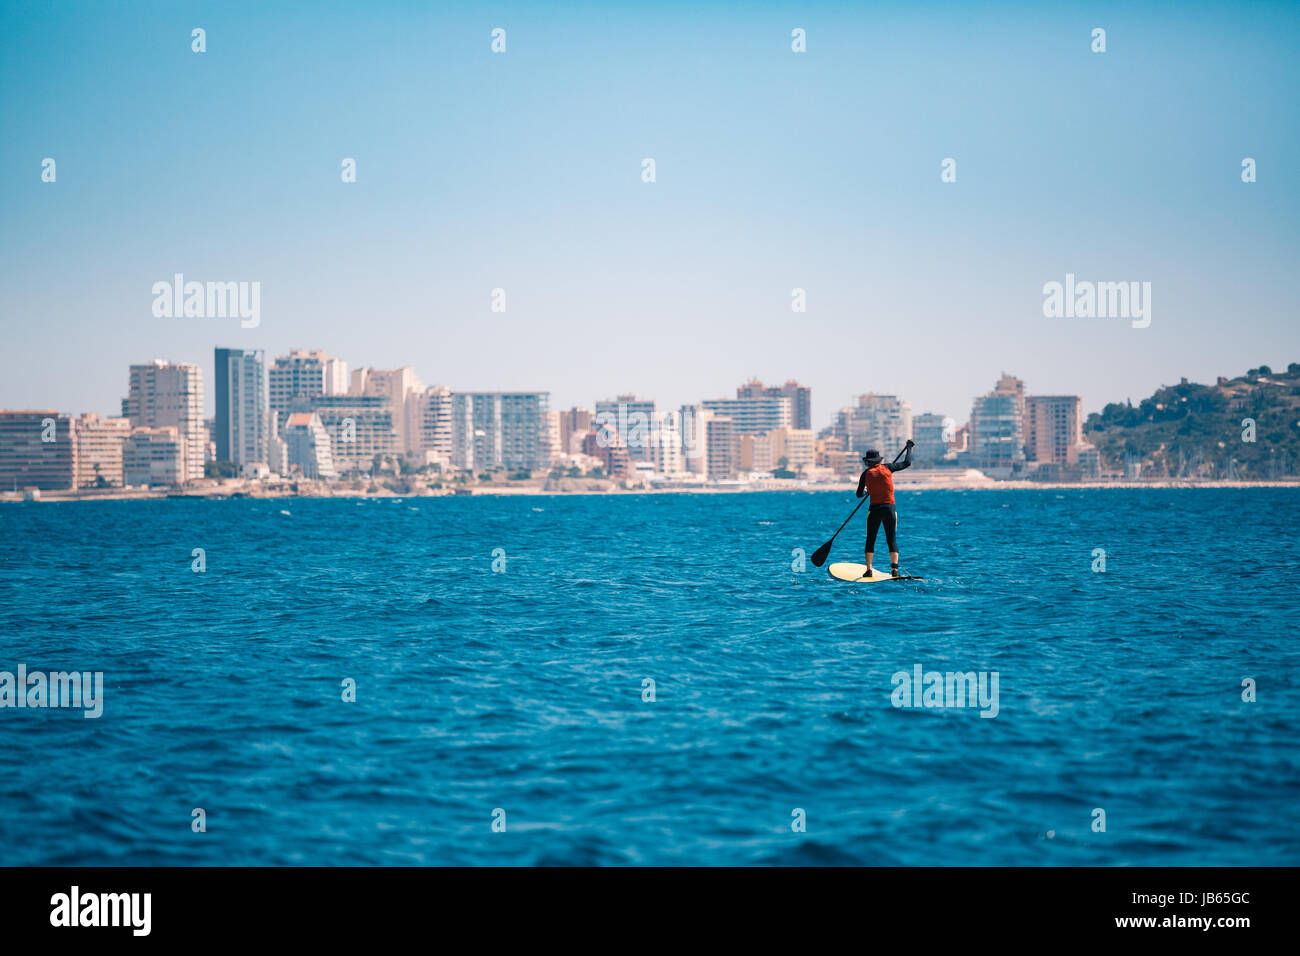 Eine Person auf einem feilbieten Board in Richtung der Stadt, am Horizont, mit Gebäuden und eine Skyline Stockfoto